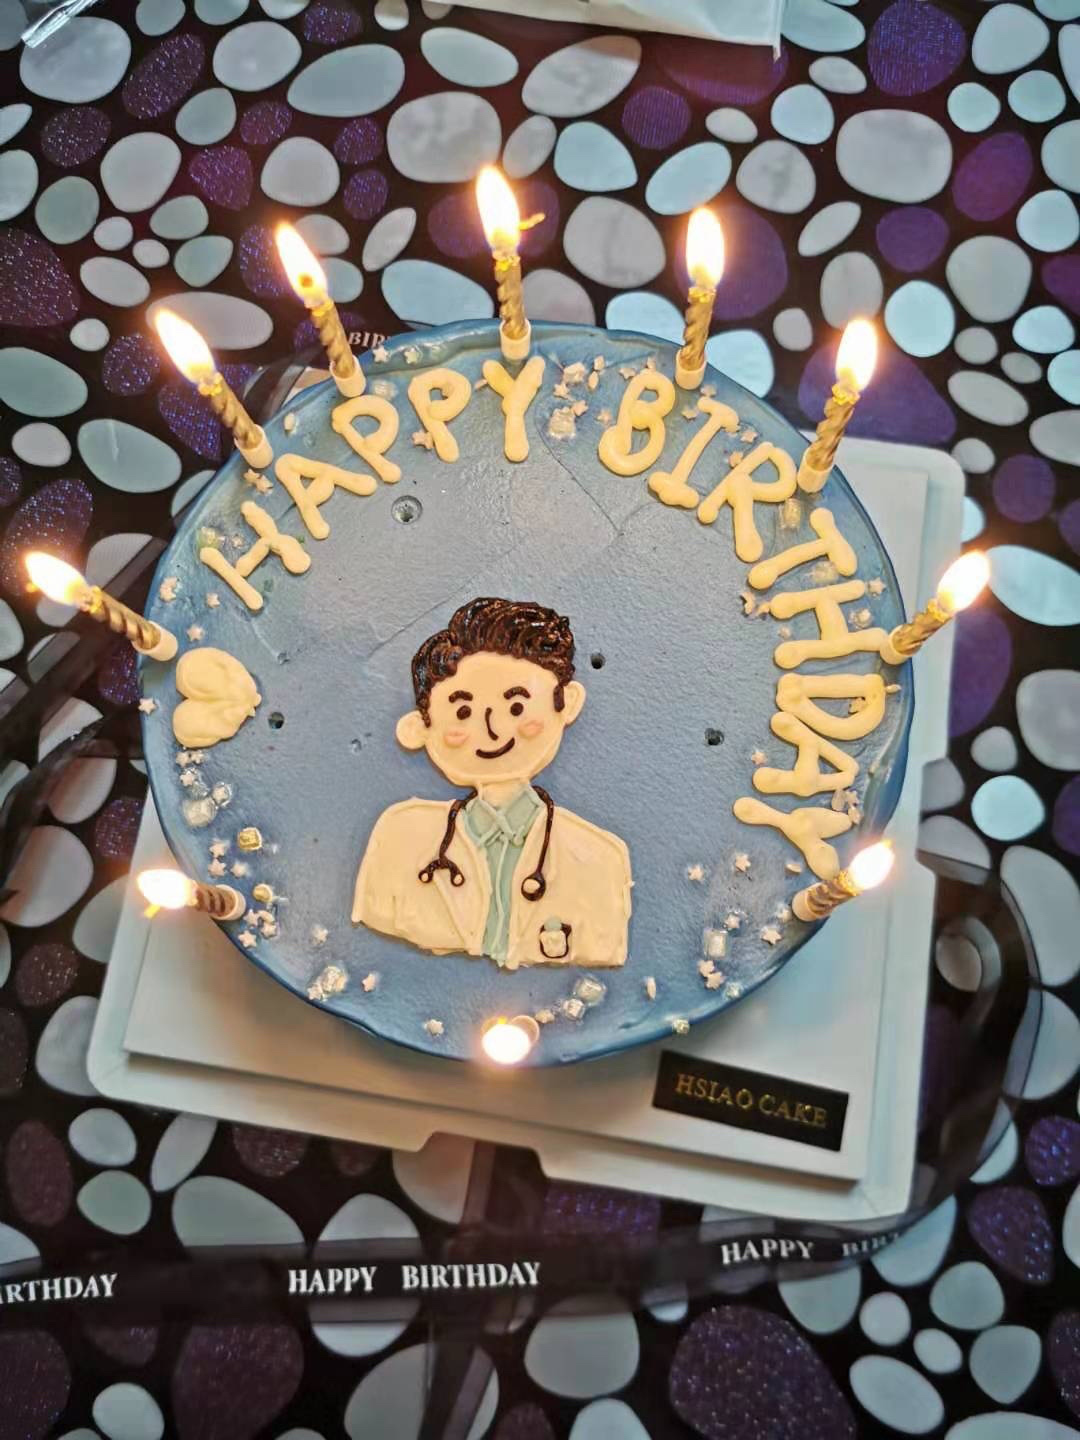 Những chiếc bánh sinh nhật đơn giản theo hình người bác sỹ lại là cách tuyệt vời để thể hiện tình yêu thương với các bác sỹ nữ đáng kính của chúng ta. Hãy xem hình ảnh của nữ bác sỹ với chiếc bánh sinh nhật đầy màu sắc để tràn đầy niềm cảm hứng và hy vọng!